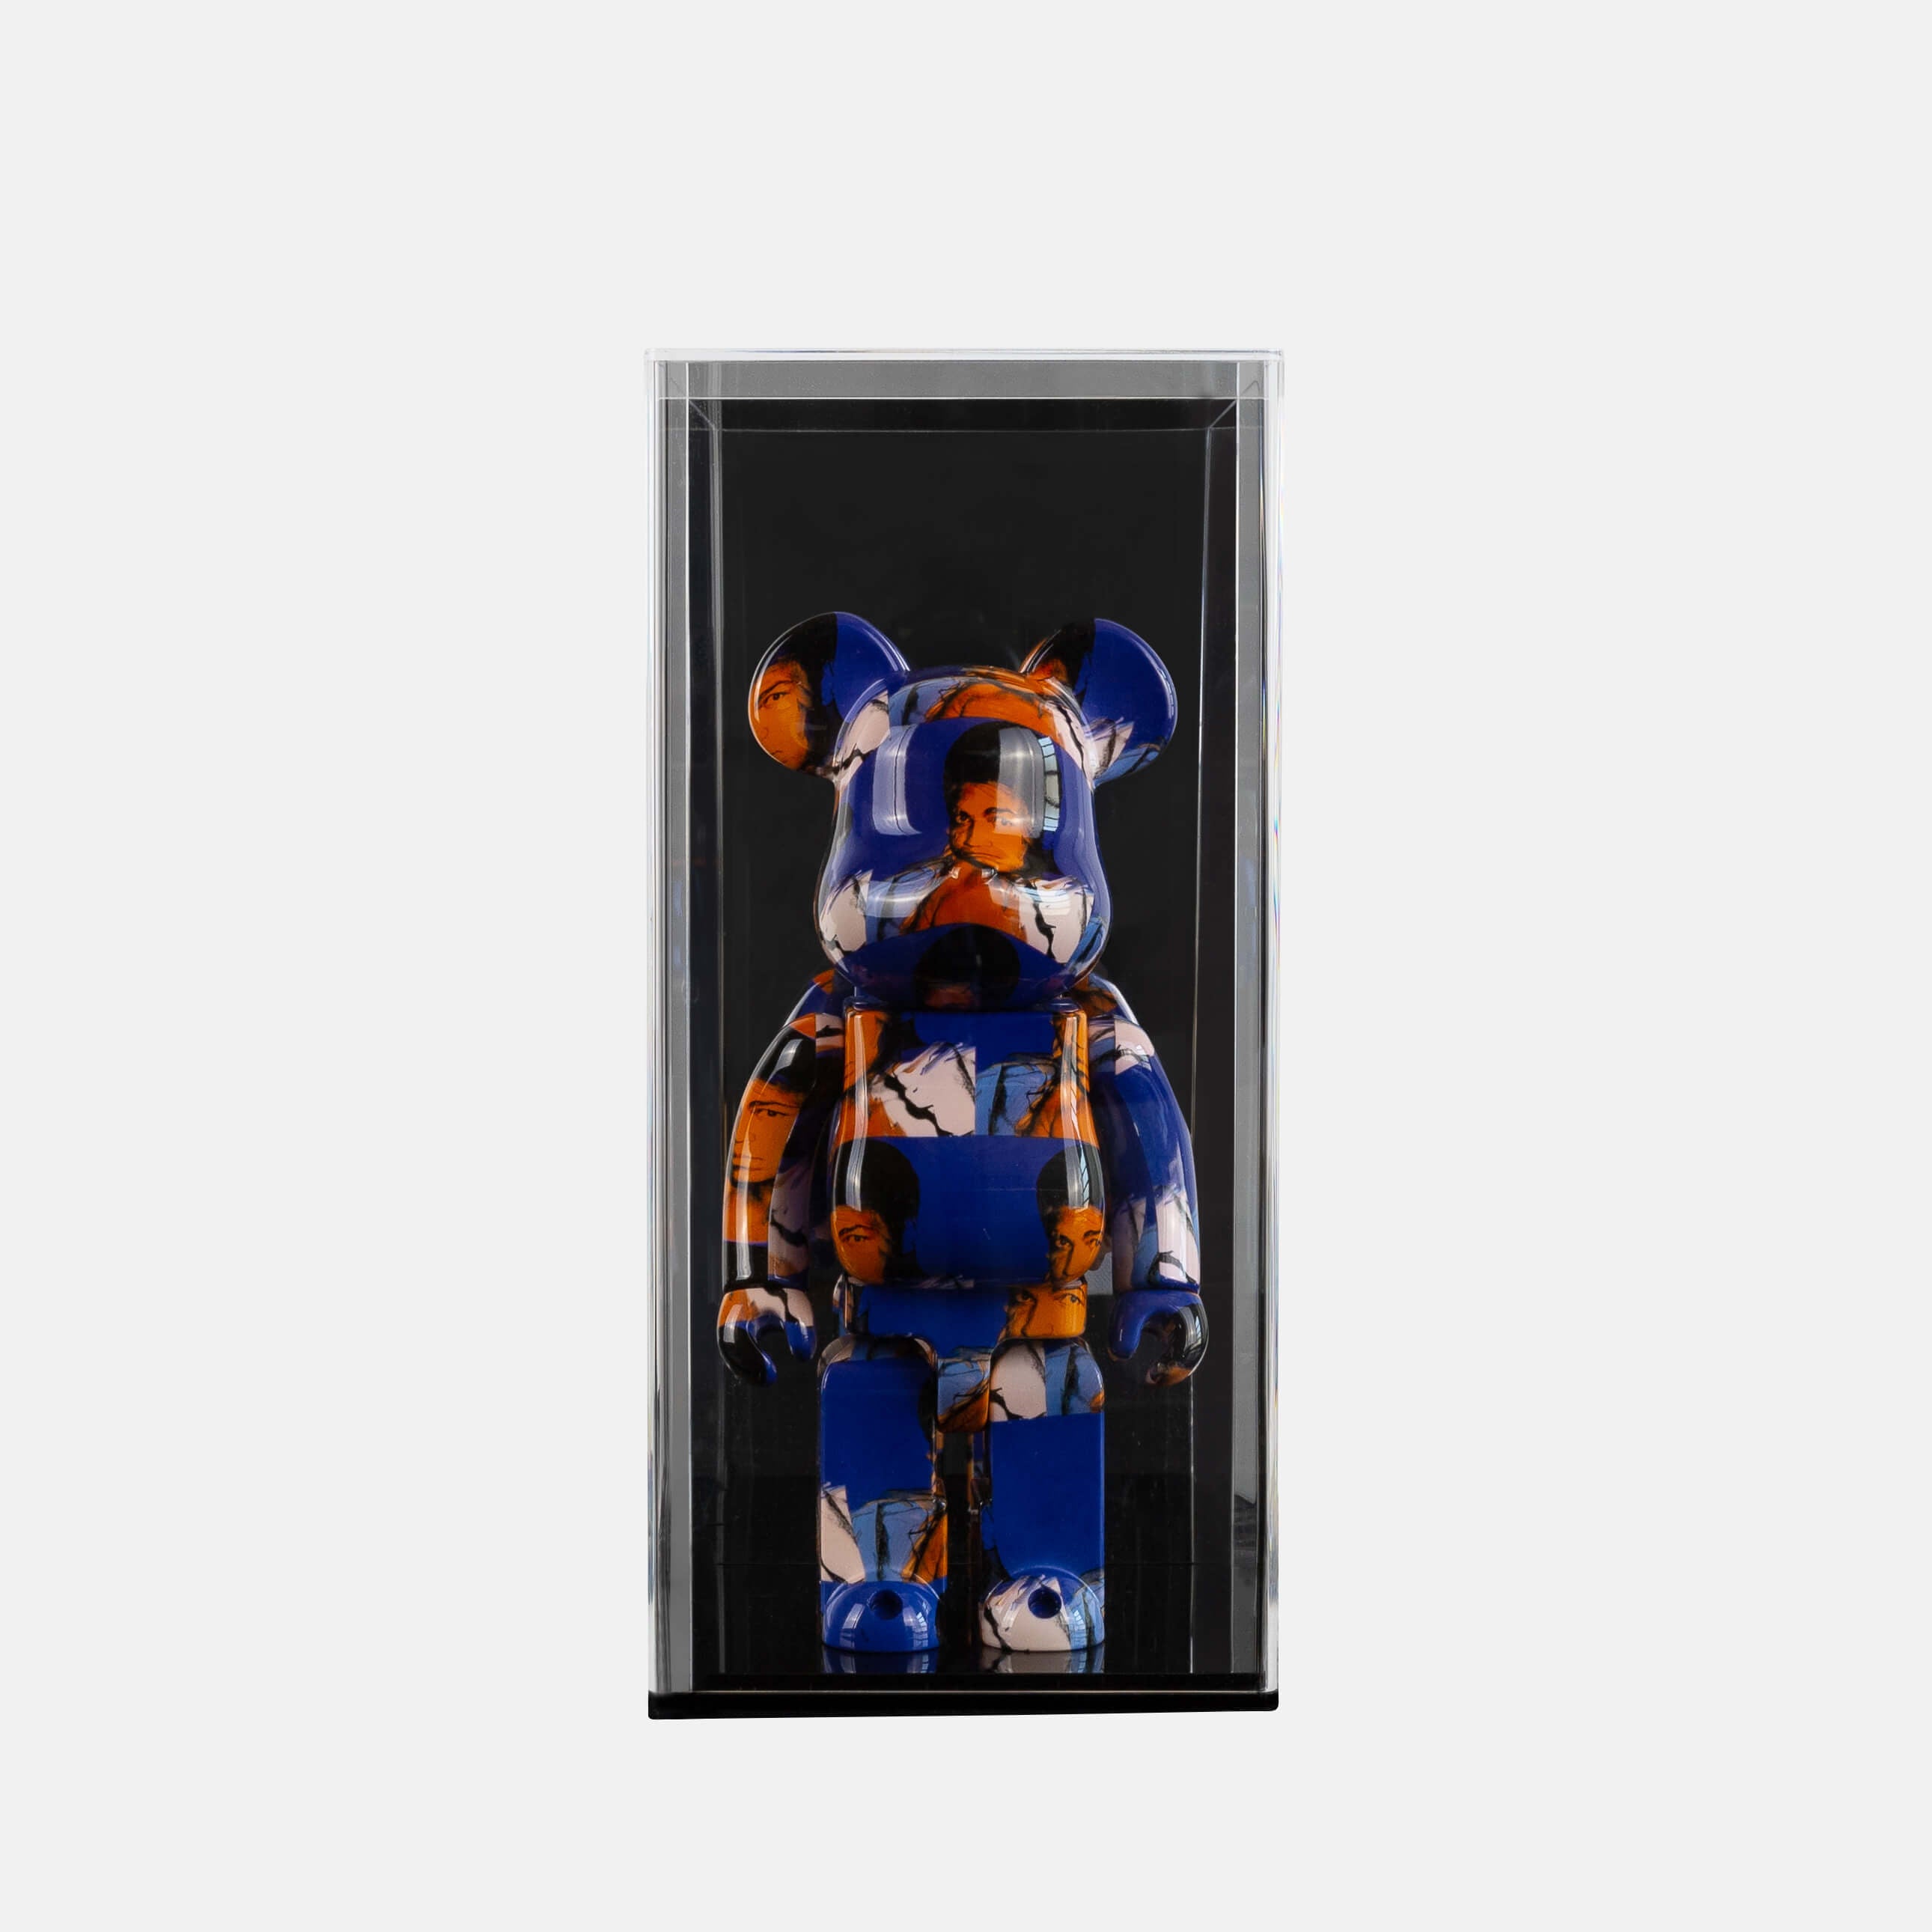 Looksee Designs - Le Jouet Figure Display Case - Bear Brick Display - Toy Figure Display - Kaws Figure